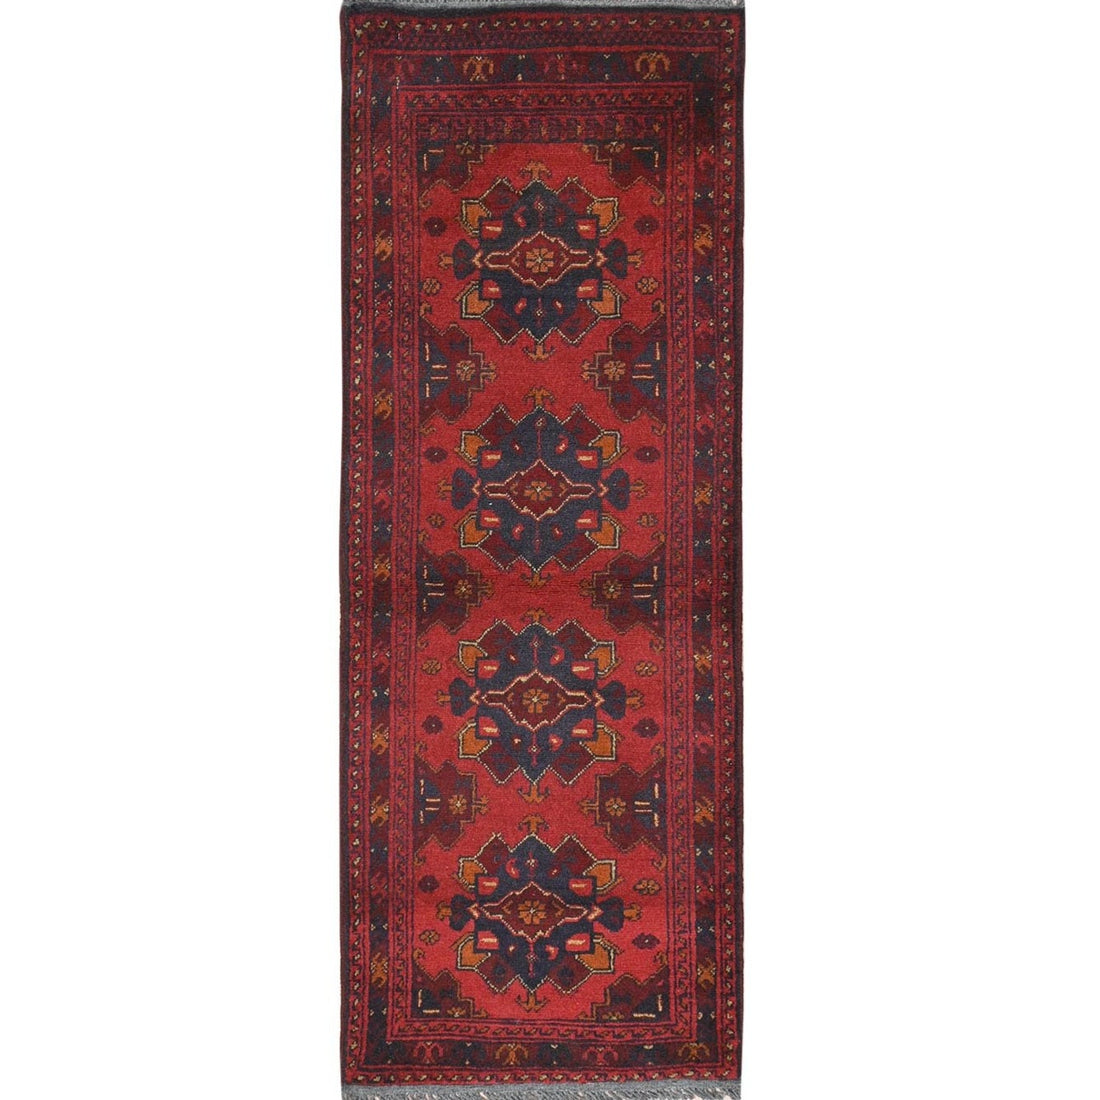 1'9" x 4'9" | Red Afghan Runner | Wool | 210000023767